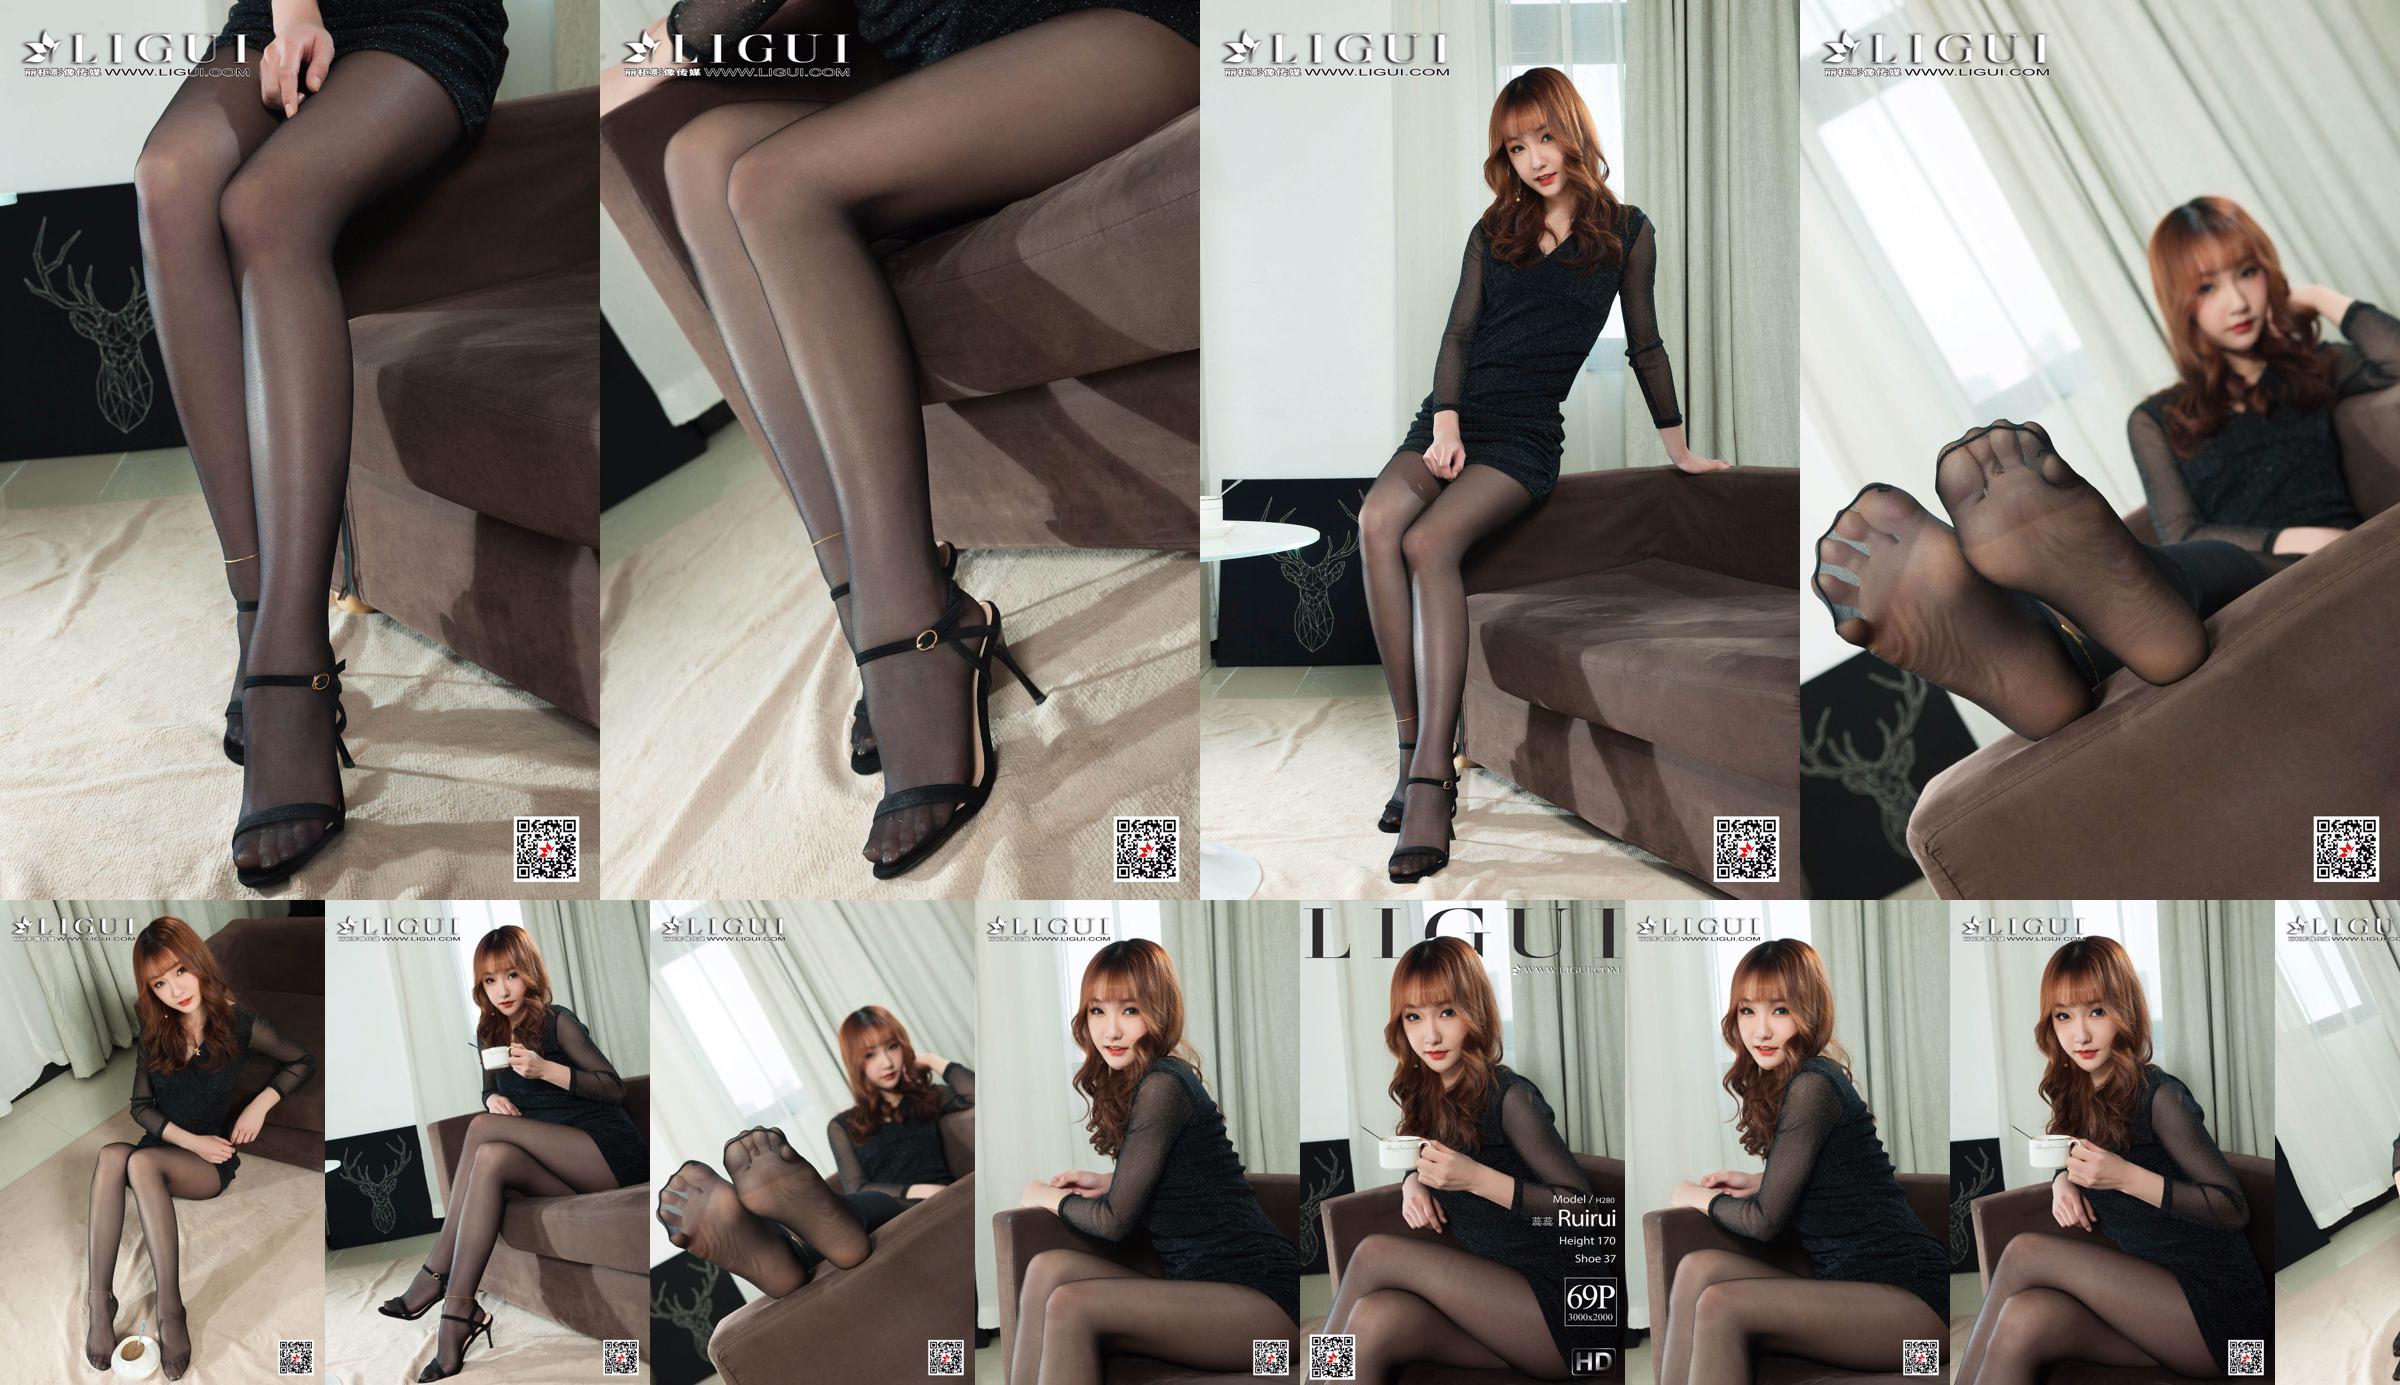 Người mẫu Ruirui "Đôi chân đẹp và đôi chân ngọc bích trong vớ đen" [Ligui Ligui] No.c18b4d Trang 2